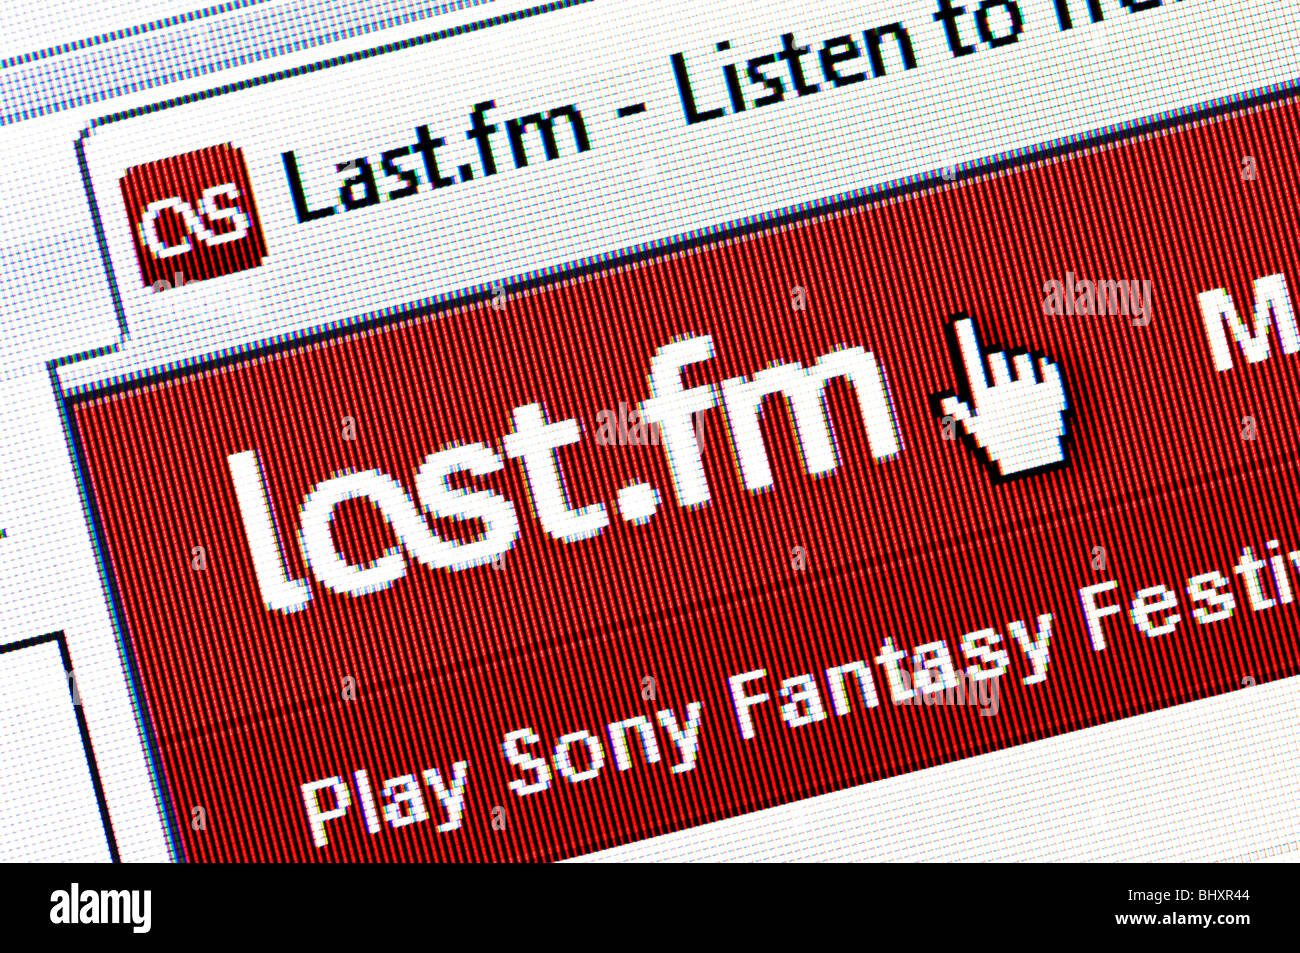 Makro-Screenshot der Last.fm Website - Internet-Musik-Radio und social-networking-Site. Nur zur redaktionellen Verwendung. Stockfoto